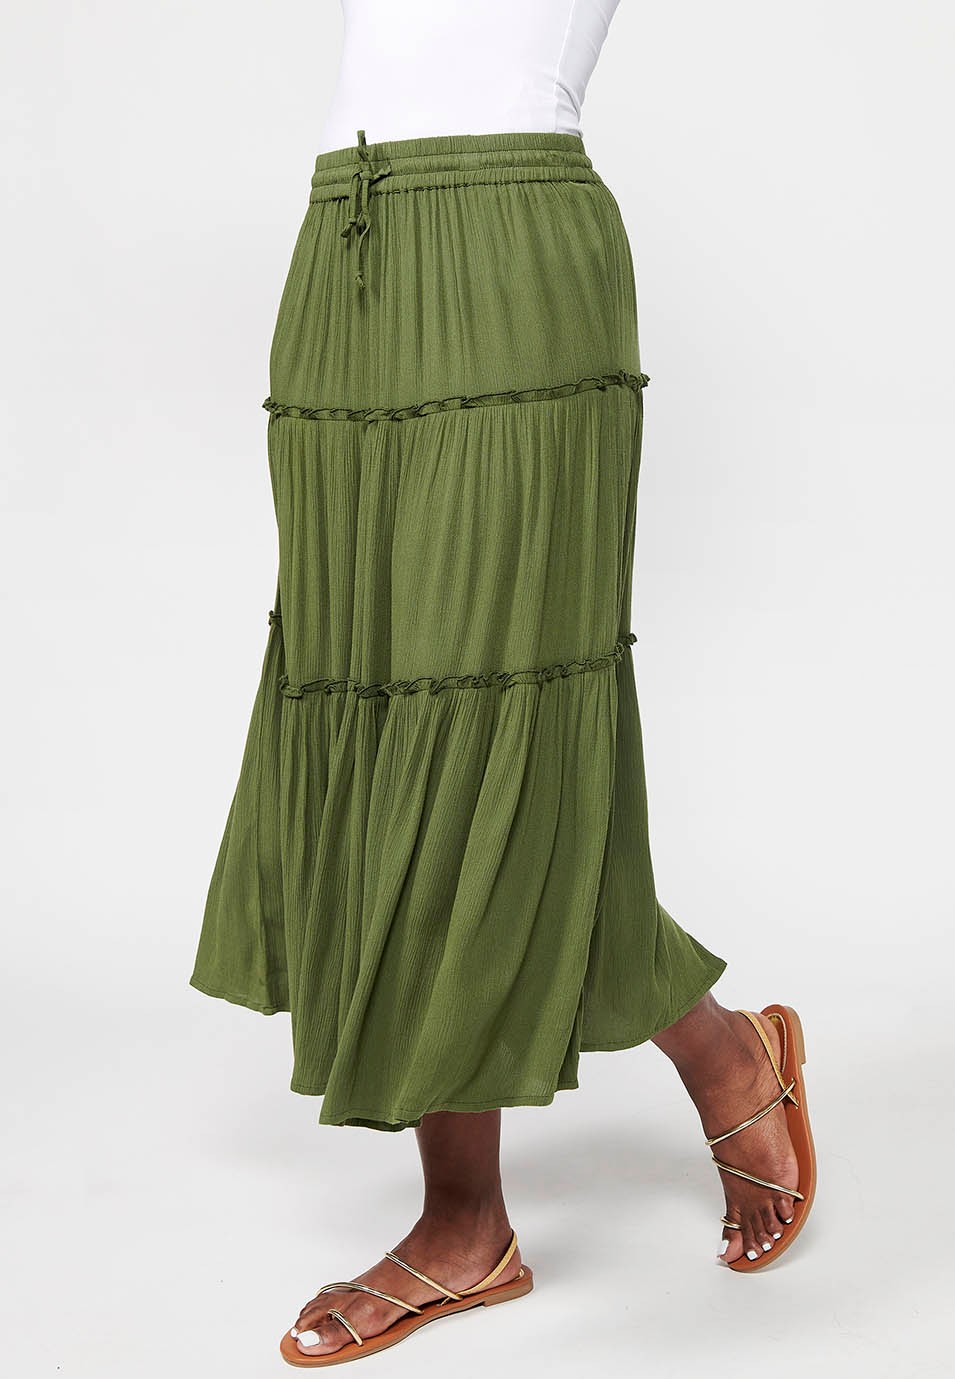 Long skirt, rubberized waist, green color for women